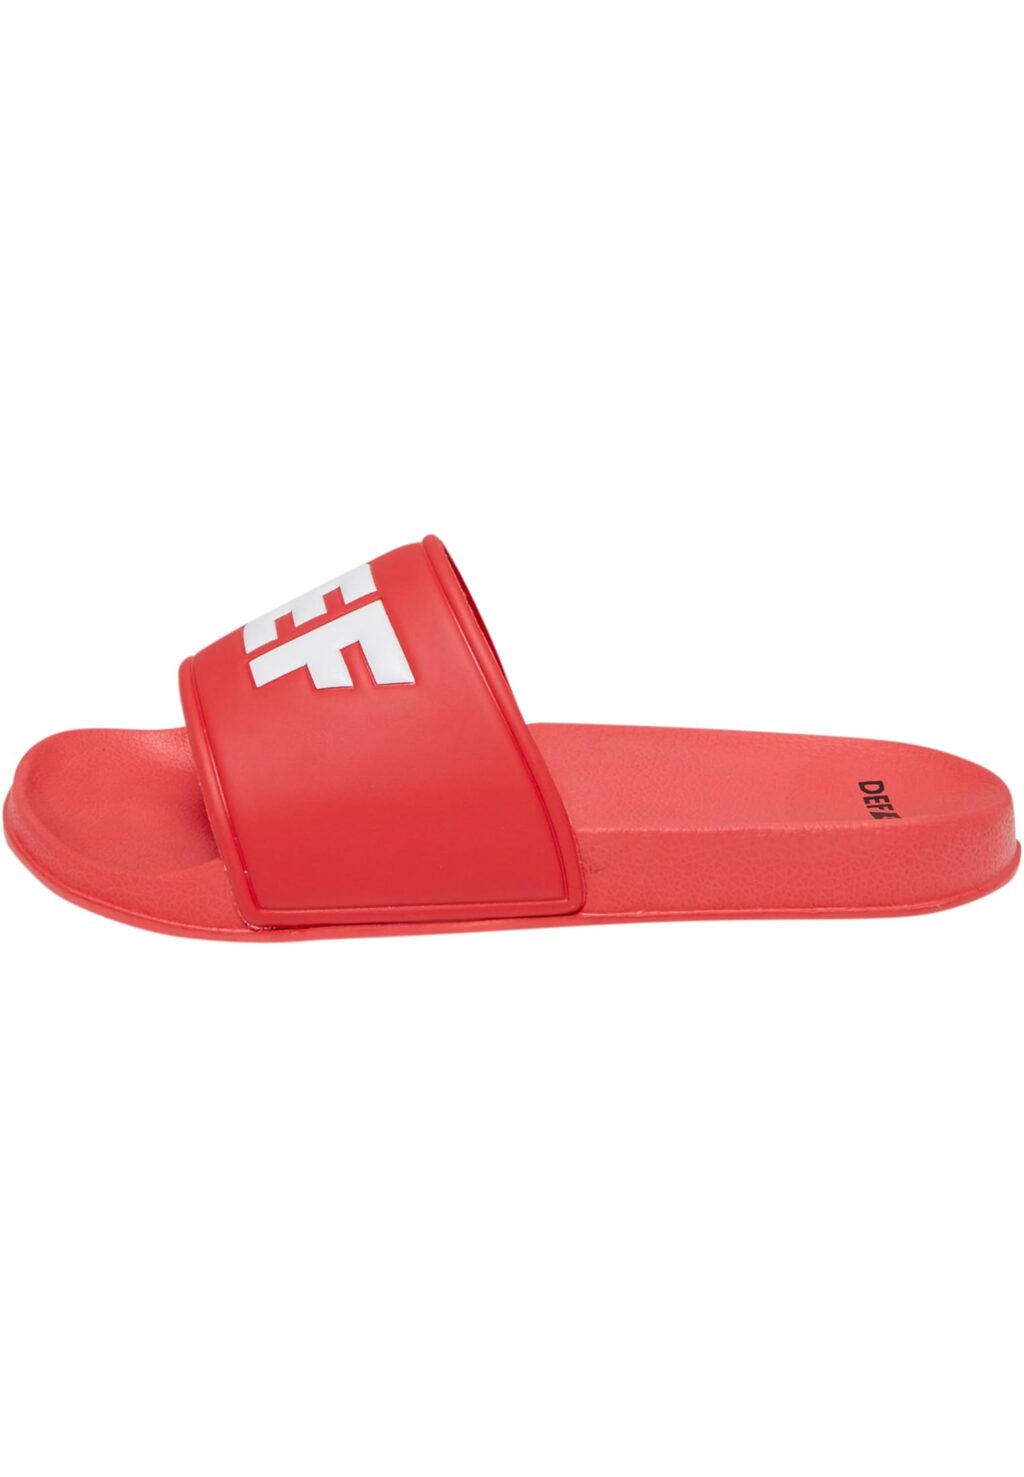 Defiletten Sandals red DFDF001